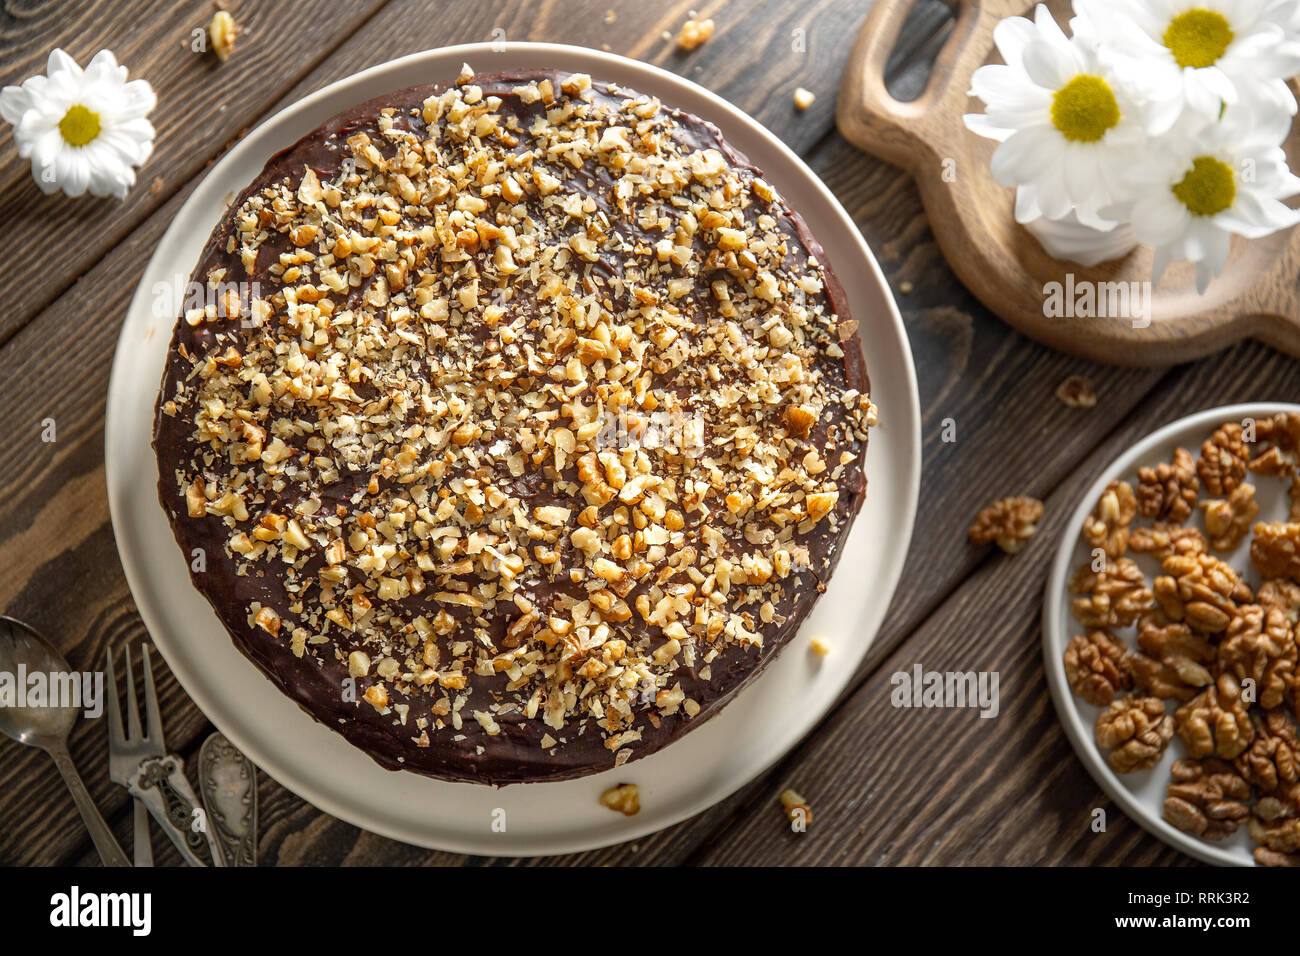 Chocolate casero torta cubierta con cobertura de chocolate y espolvorear con nueces Foto de stock